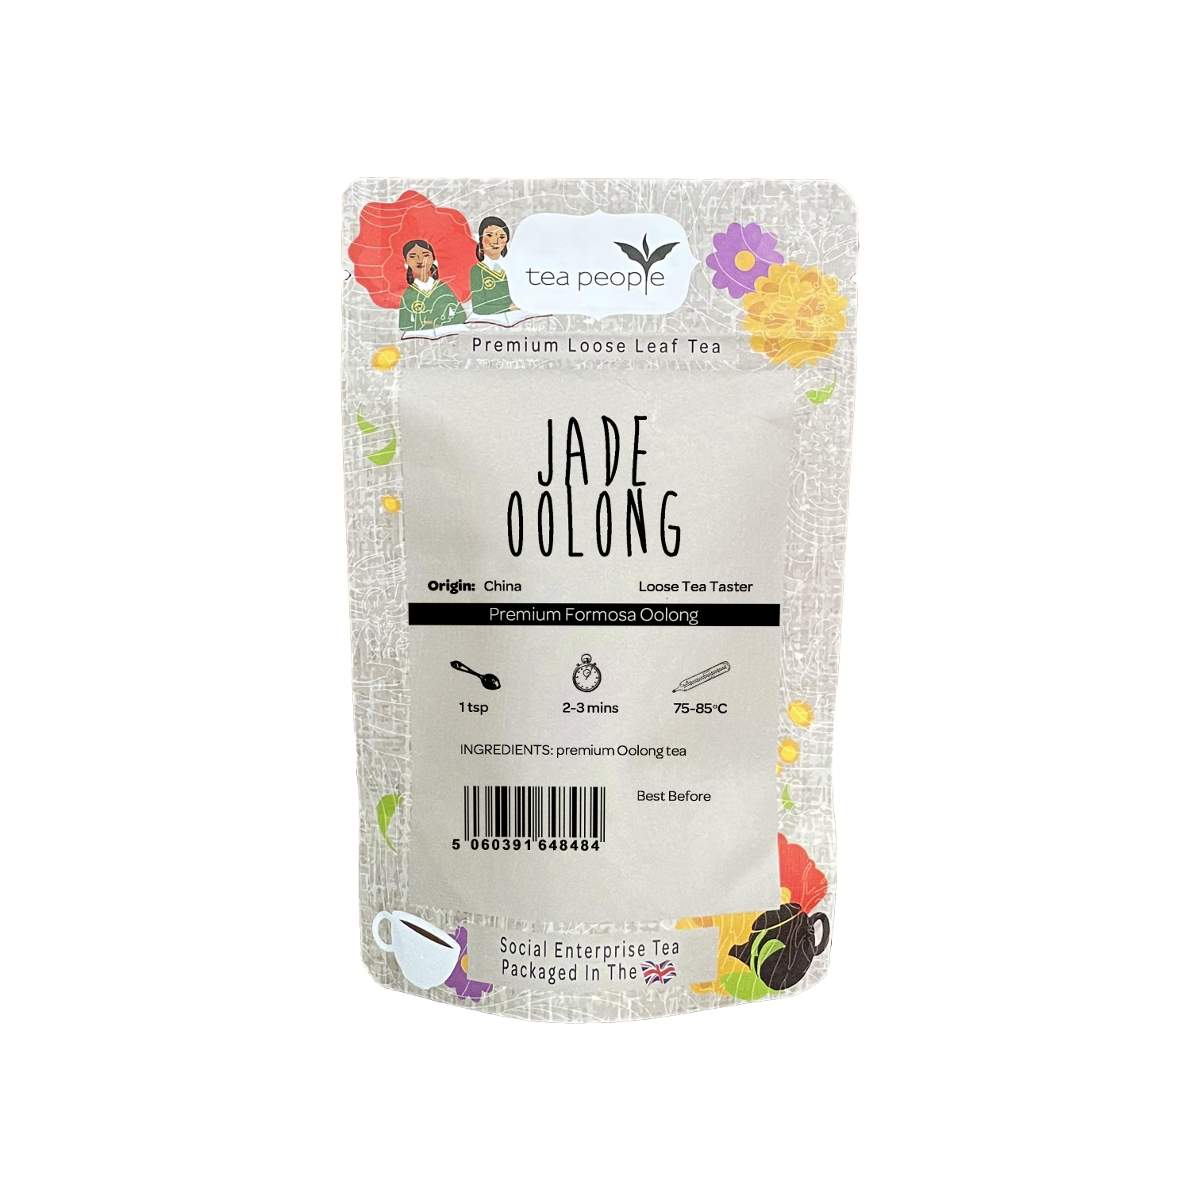 Formosa Jade Oolong Tea - Loose Leaf Tea - Loose Tea Taster Pack